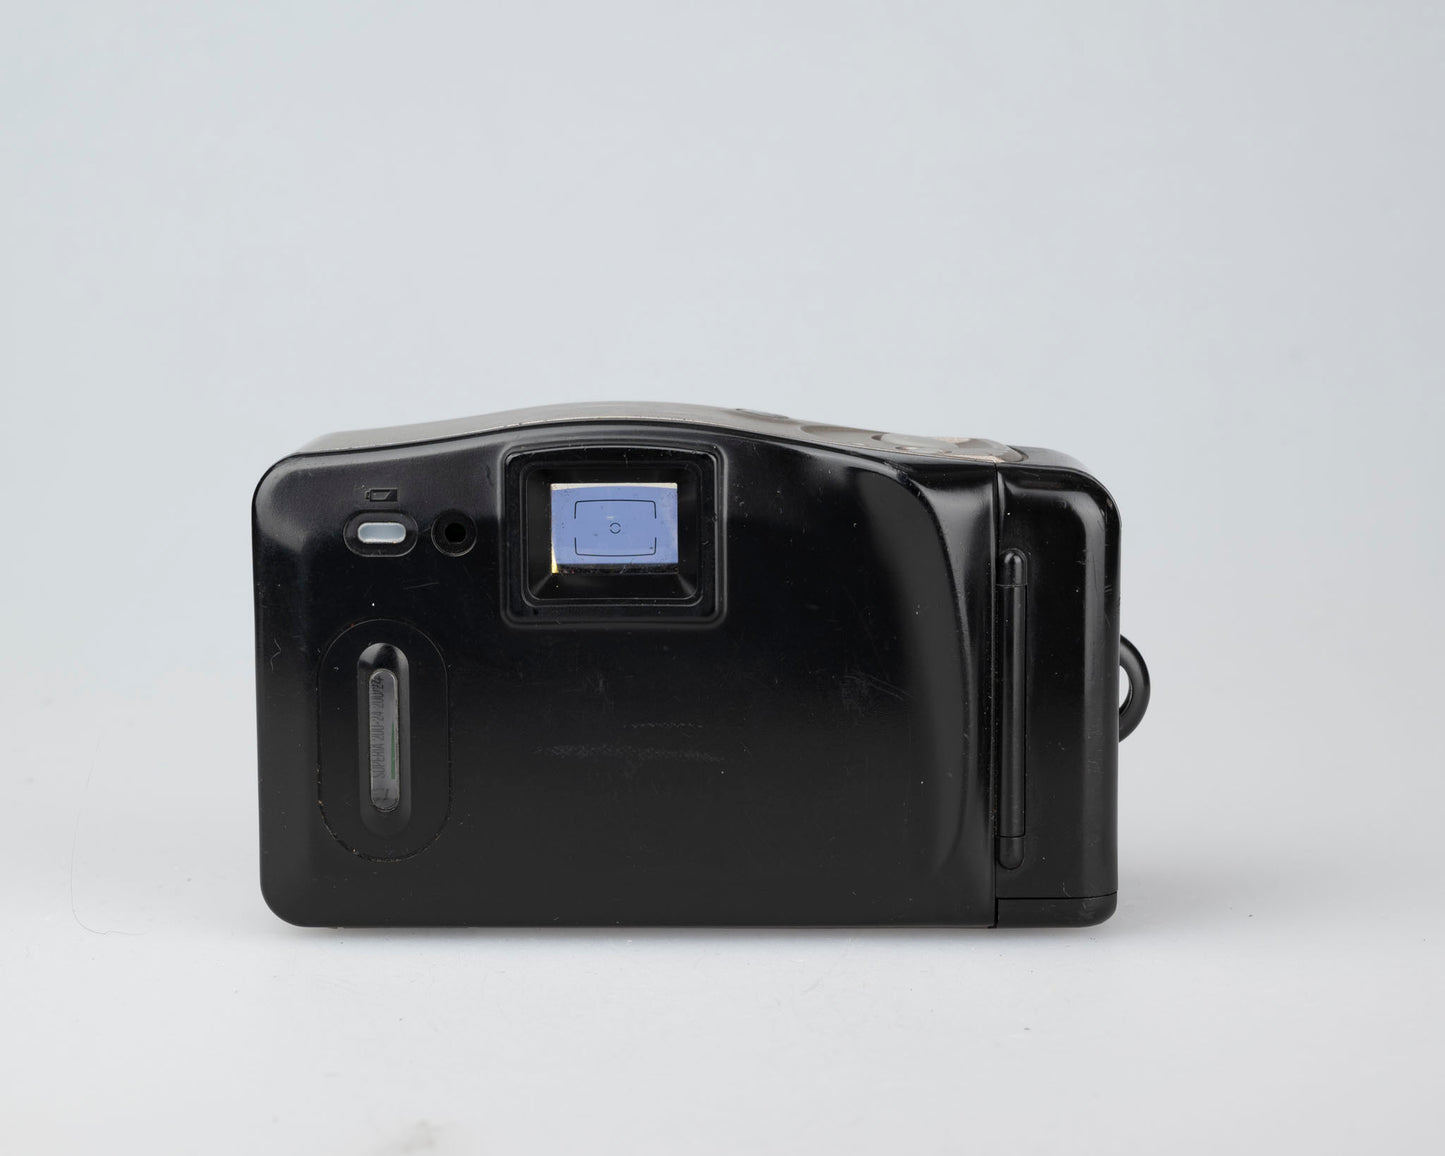 Minolta Freedom AF Big Finder 35mm camera (serial 73906038)